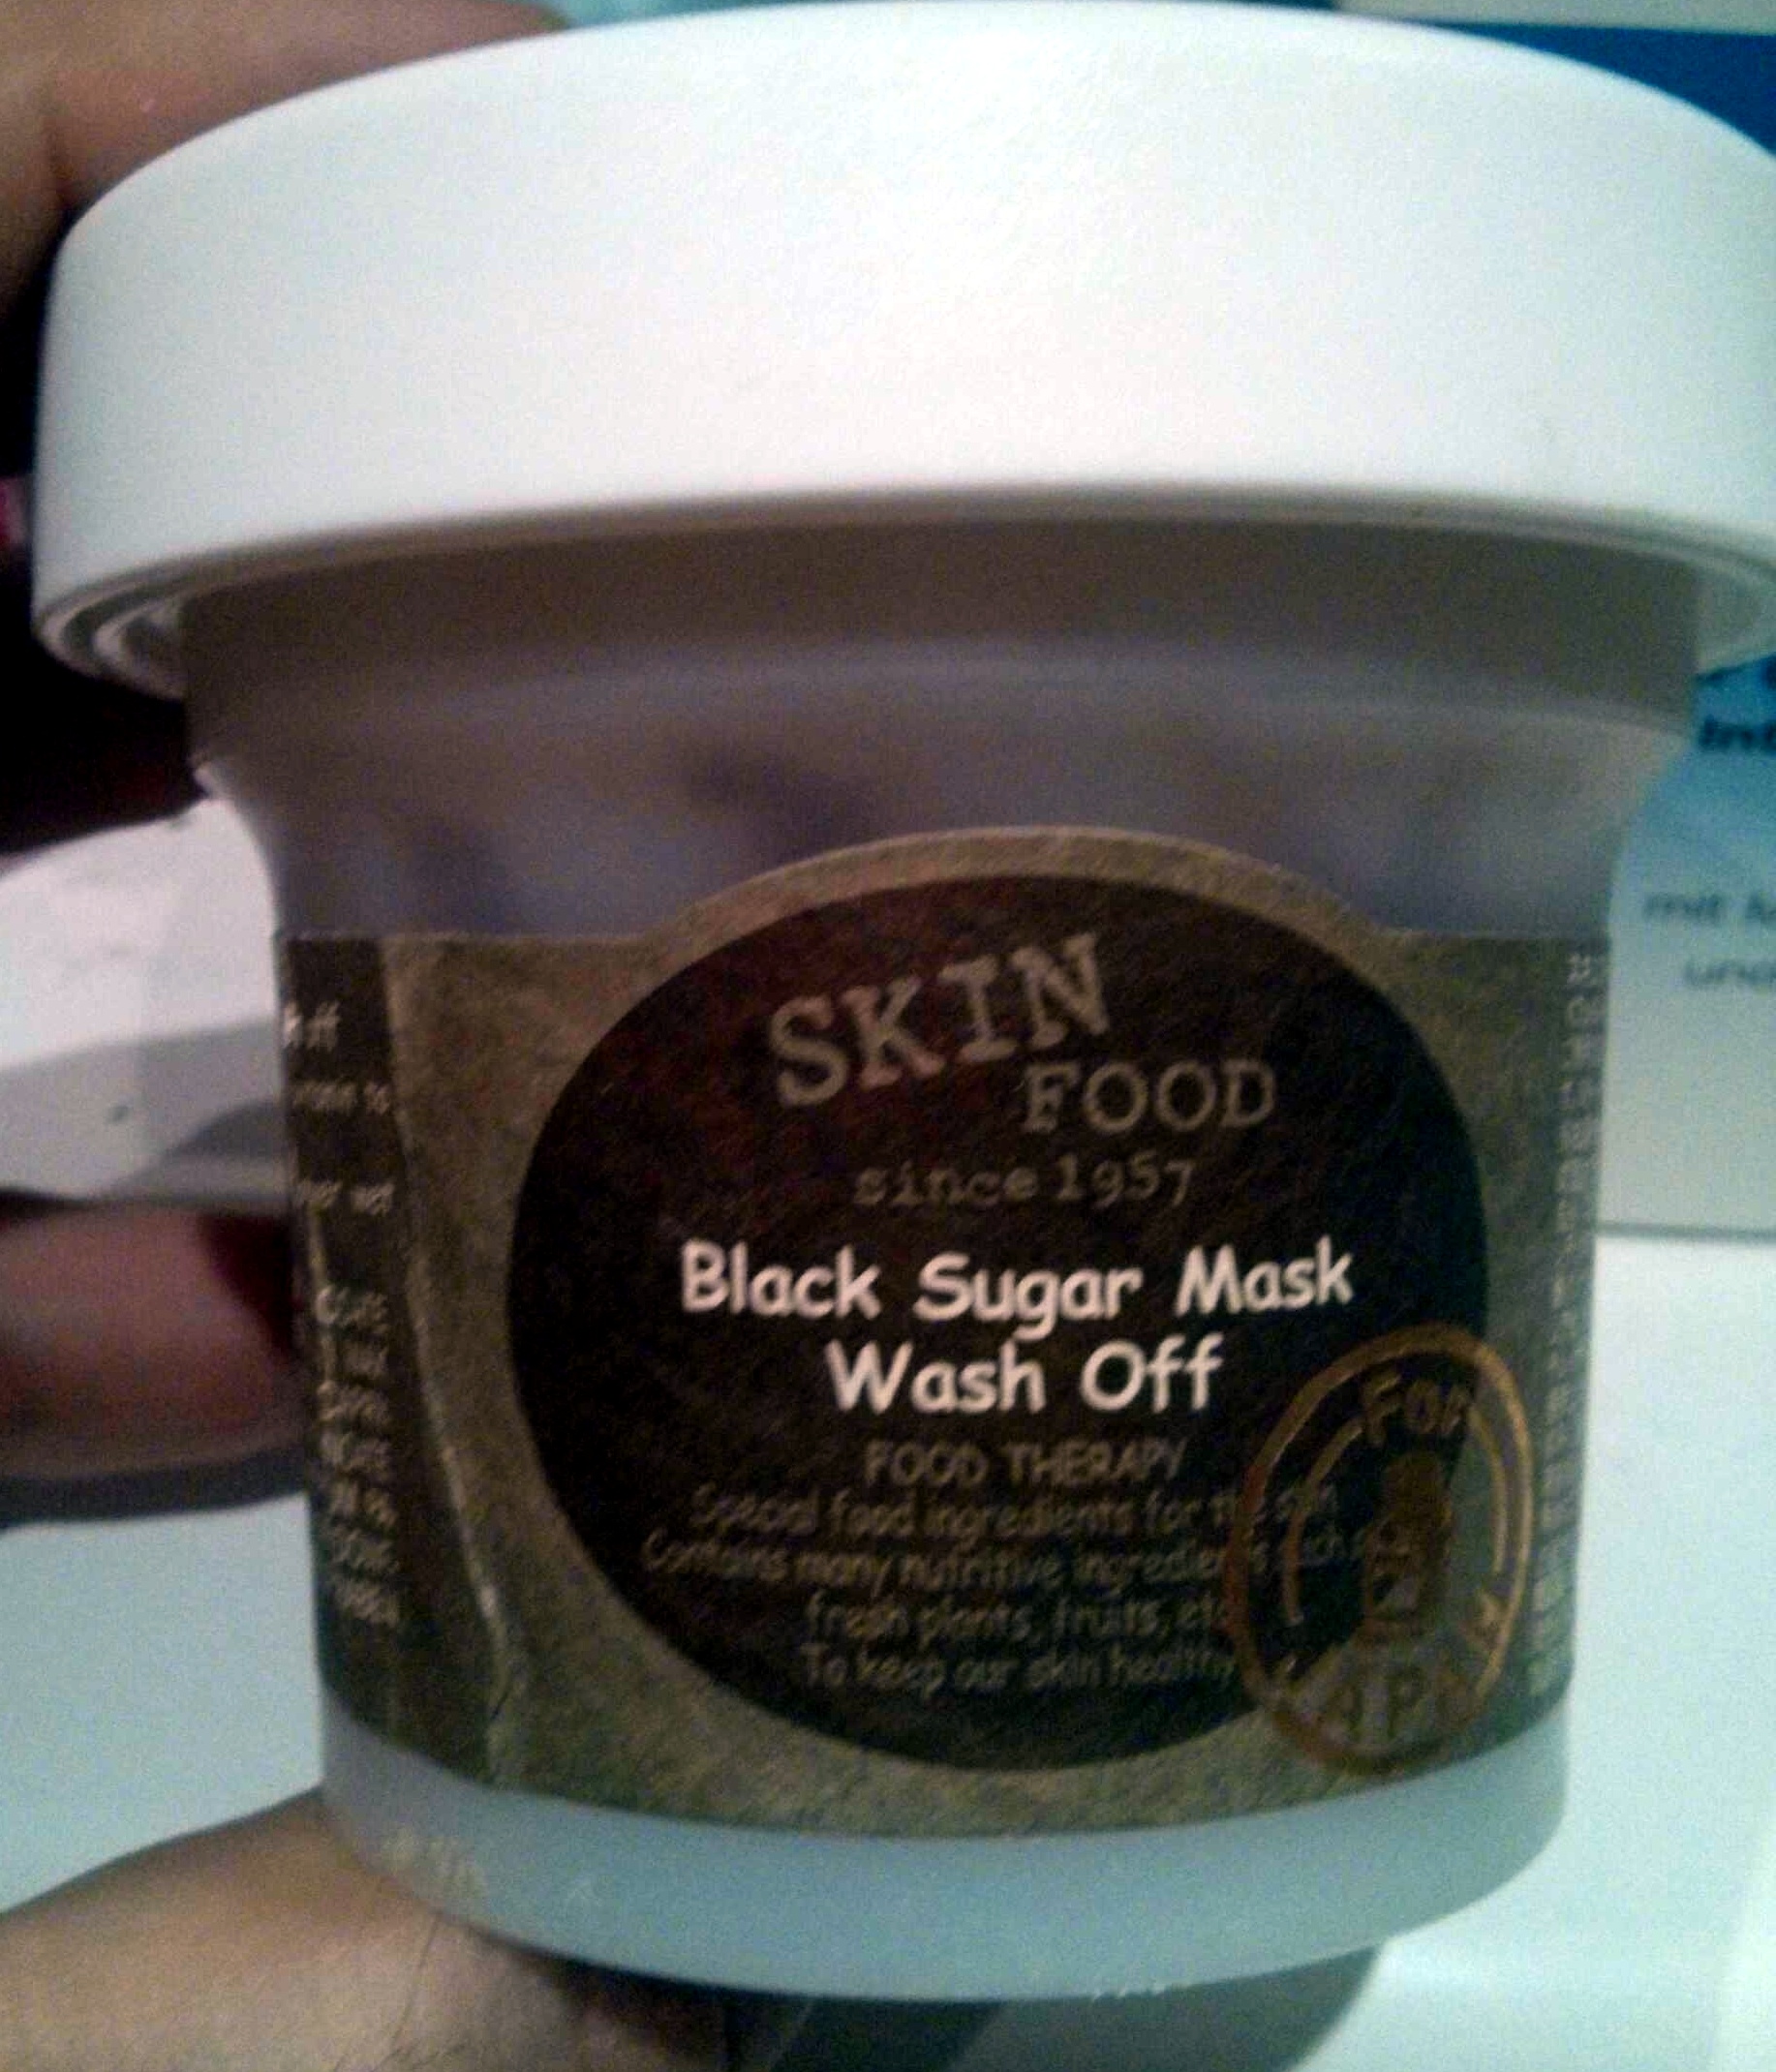 Black sugar mask wash off - Produit - en